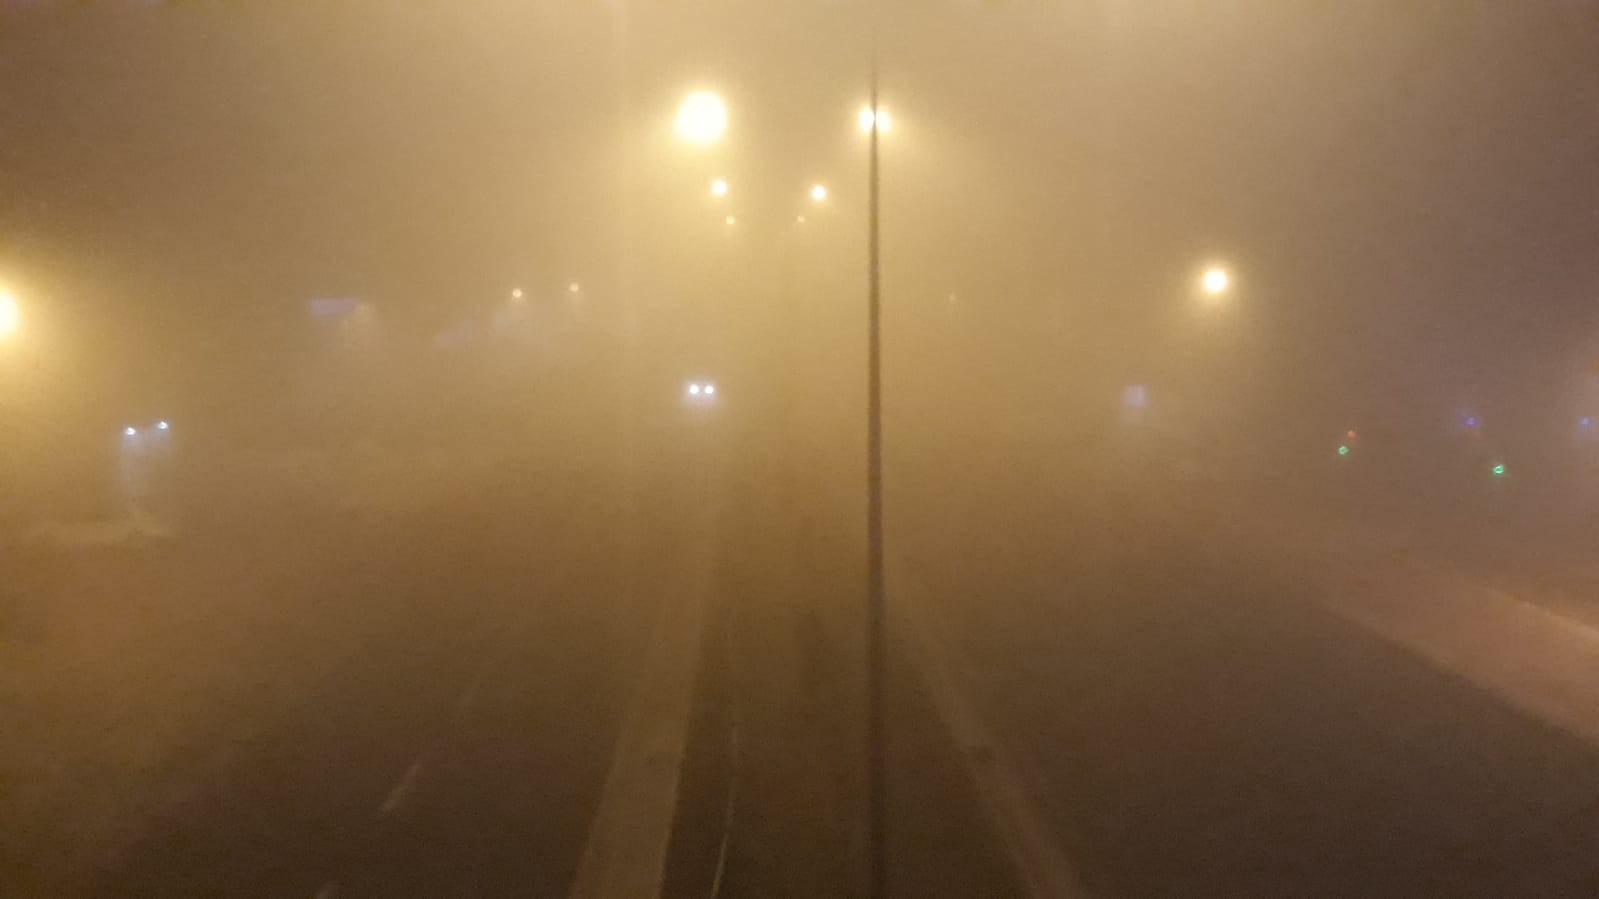 Viranşehir’de yoğun sis etkili oldu